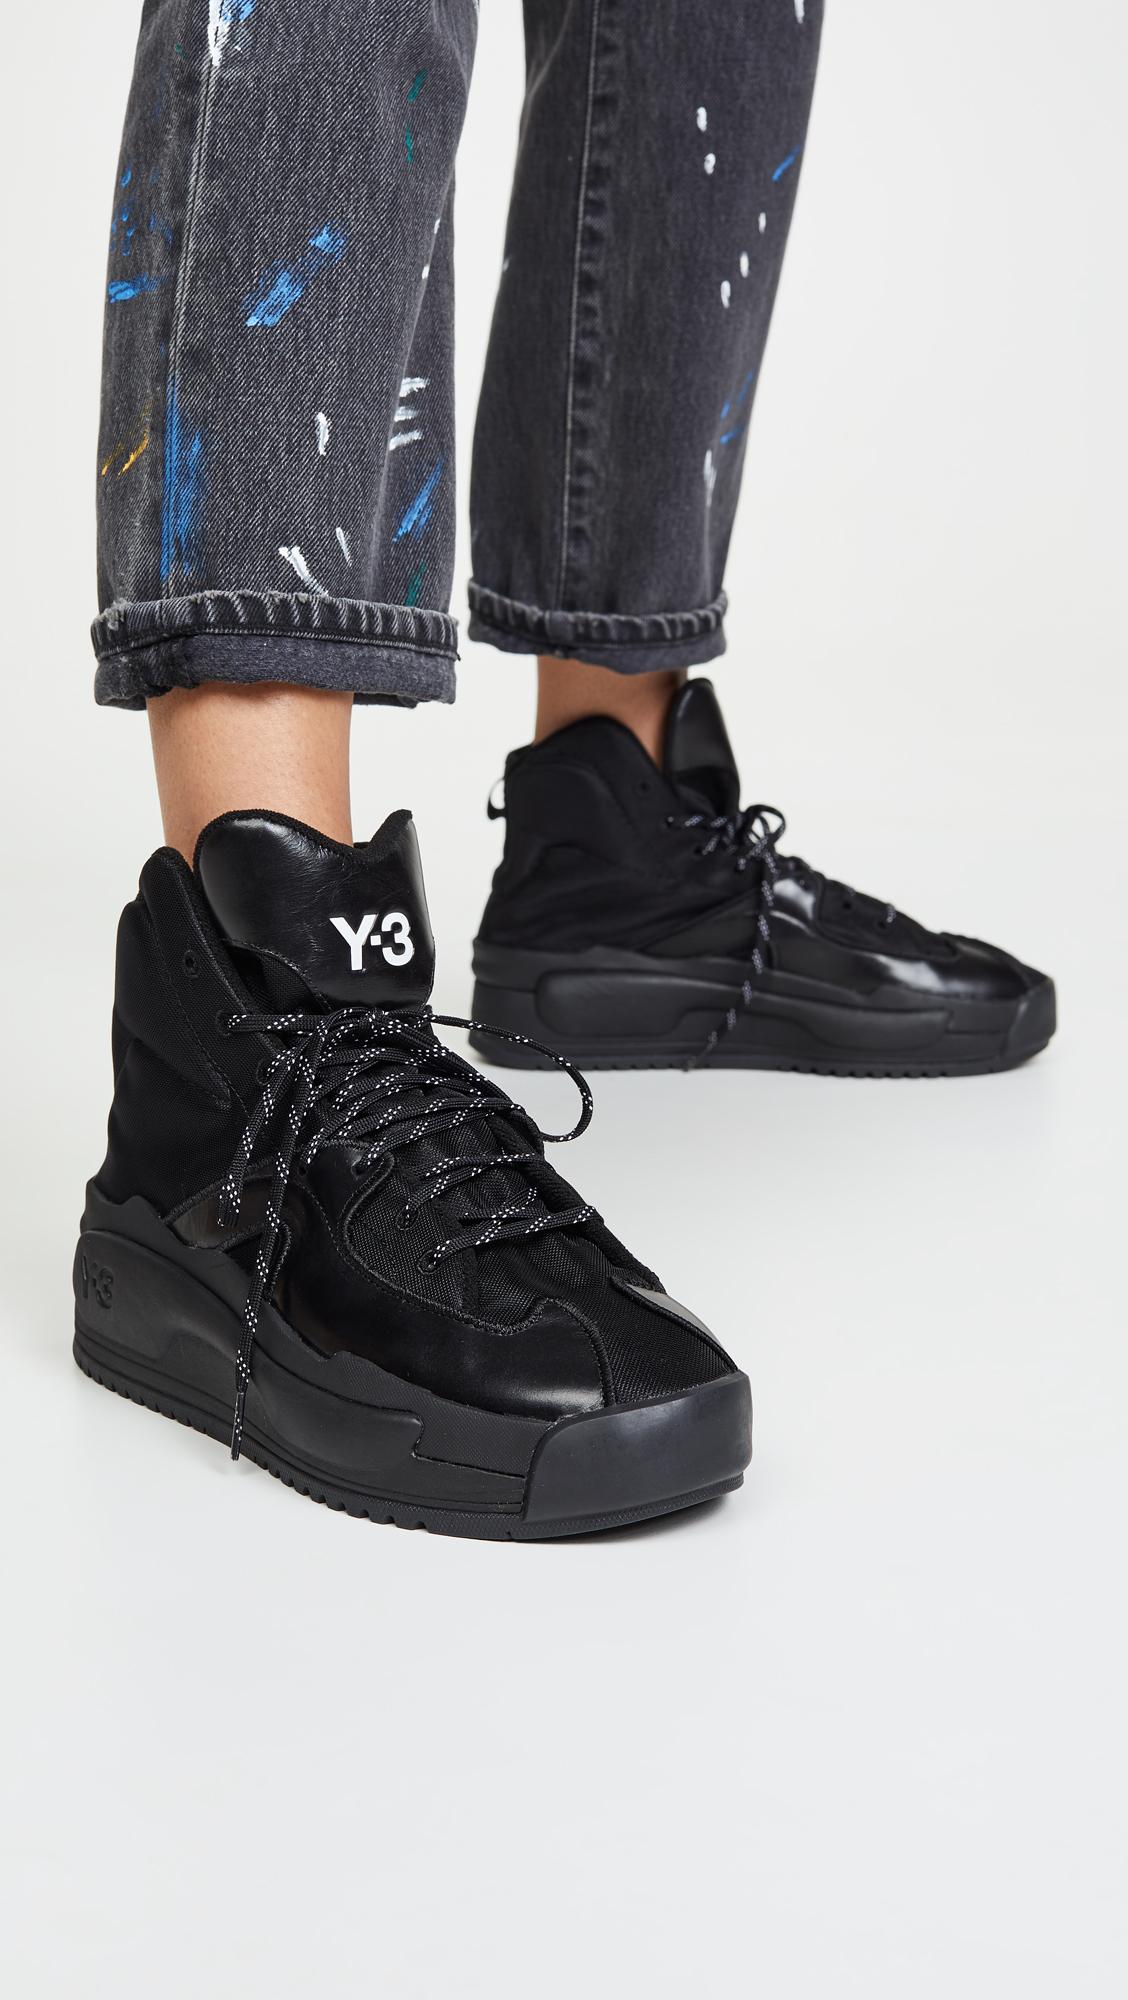 Y-3 Hokori Sneakers in Black/Black/Black (Black) - Lyst